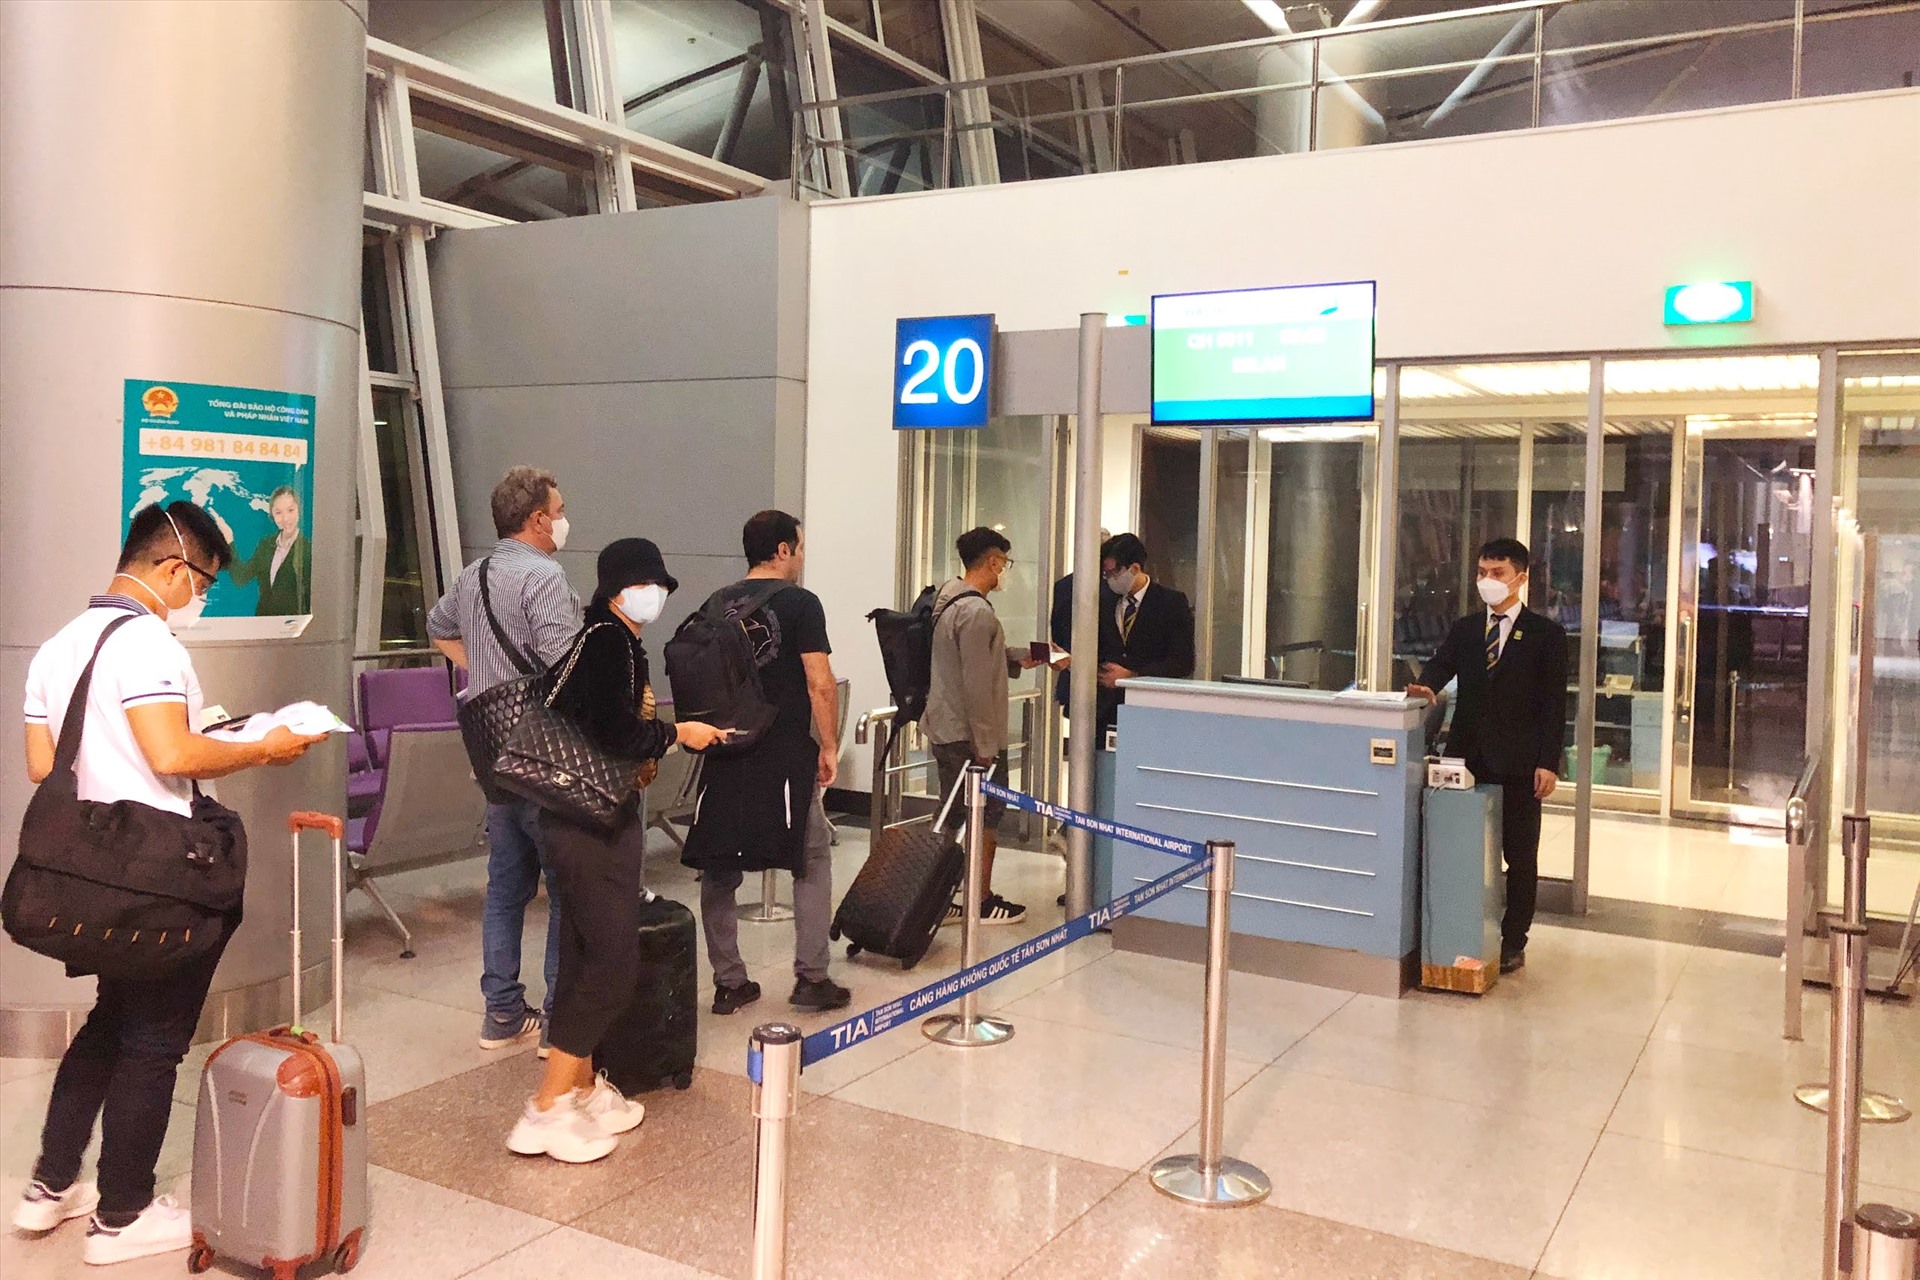 Từ đêm ngày 12.06.2020, hành khách và cán bộ nhân viên của Bamboo Airways đã có mặt ở sân bay để chuẩn bị cho chuyến bay hồi hương cất cánh lúc 3:00. Bamboo Airways nghiêm túc thực hiện các yêu cầu về phòng chống dịch của Bộ Y tế và các cơ quan chức năng.